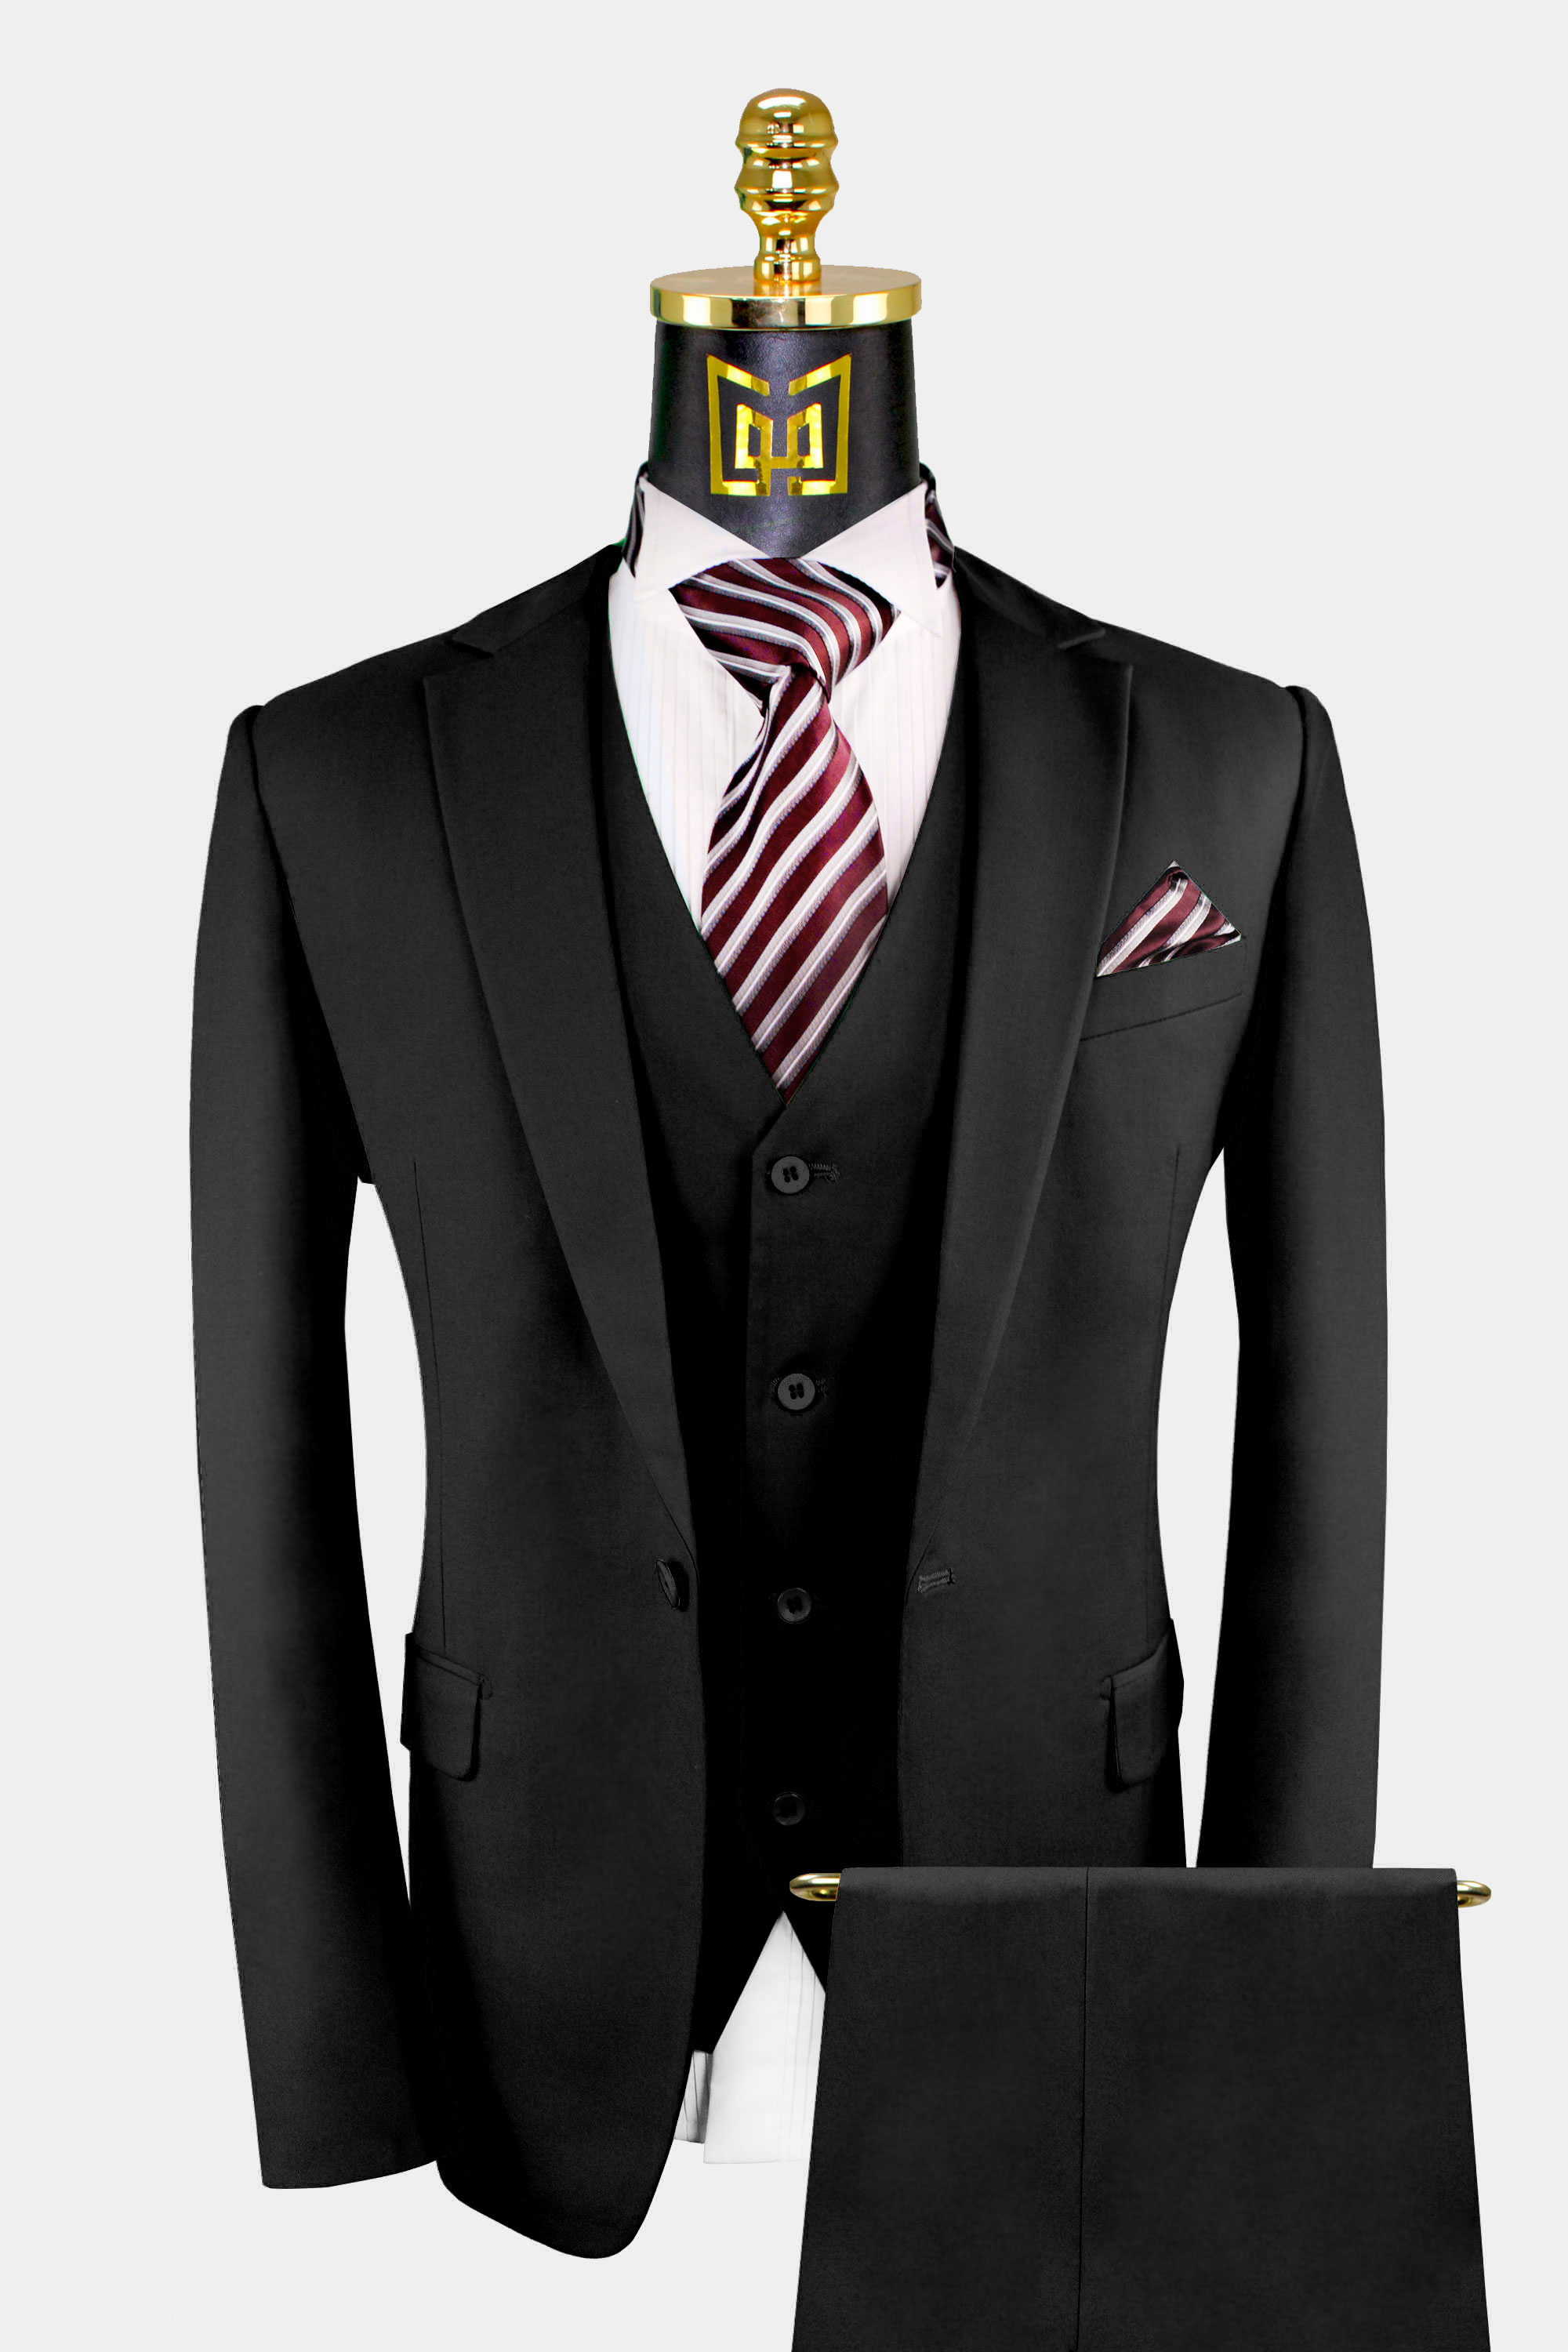 Plus Size Men Suits for Wedding Suits Black Men Suits Groom